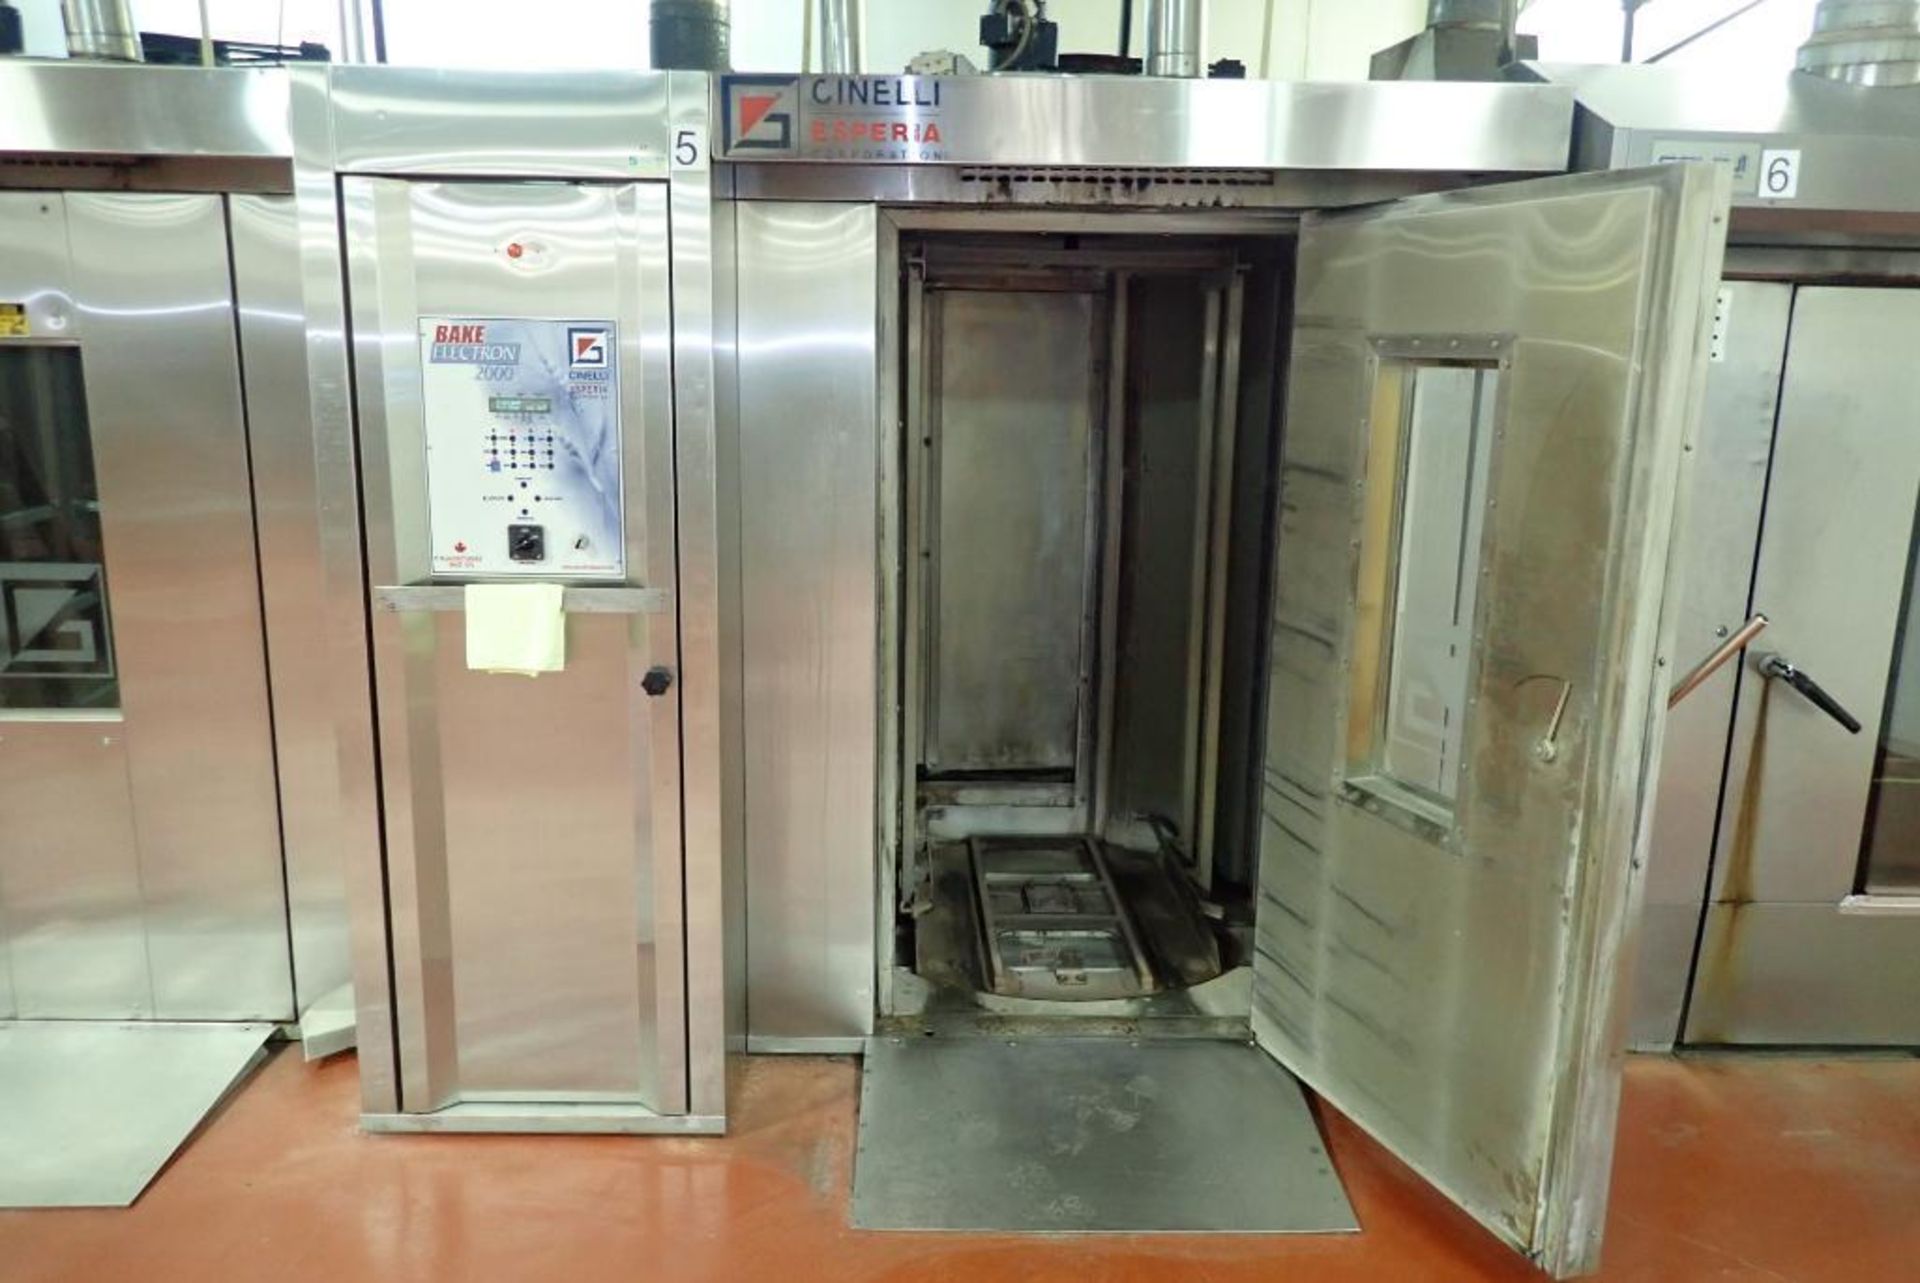 2005 Cinelli Bake Electron 2000 double rack oven - Image 3 of 21